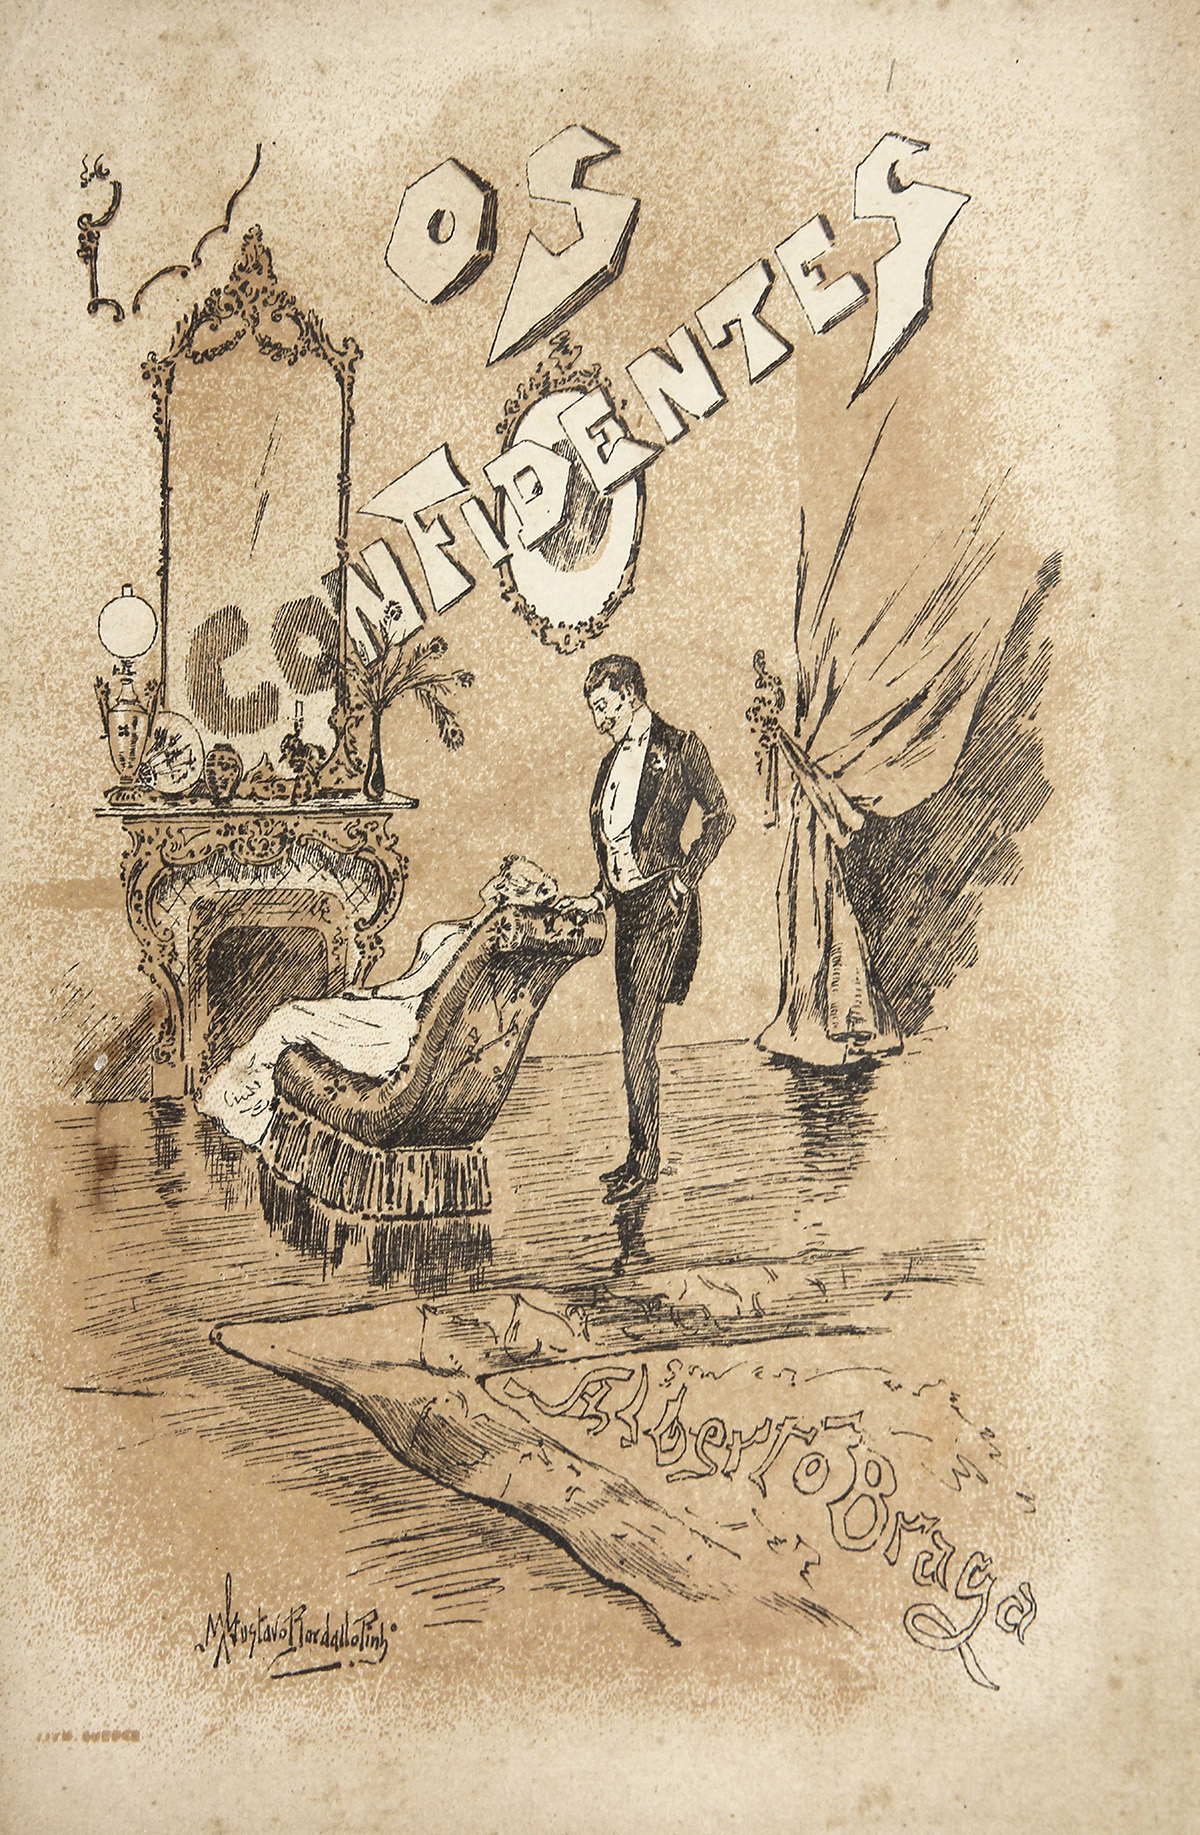 Capa da obra Os Confidentes (1887), de Alberto Braga, com ilustração de Manuel Gustavo Bordalo Pinheiro.